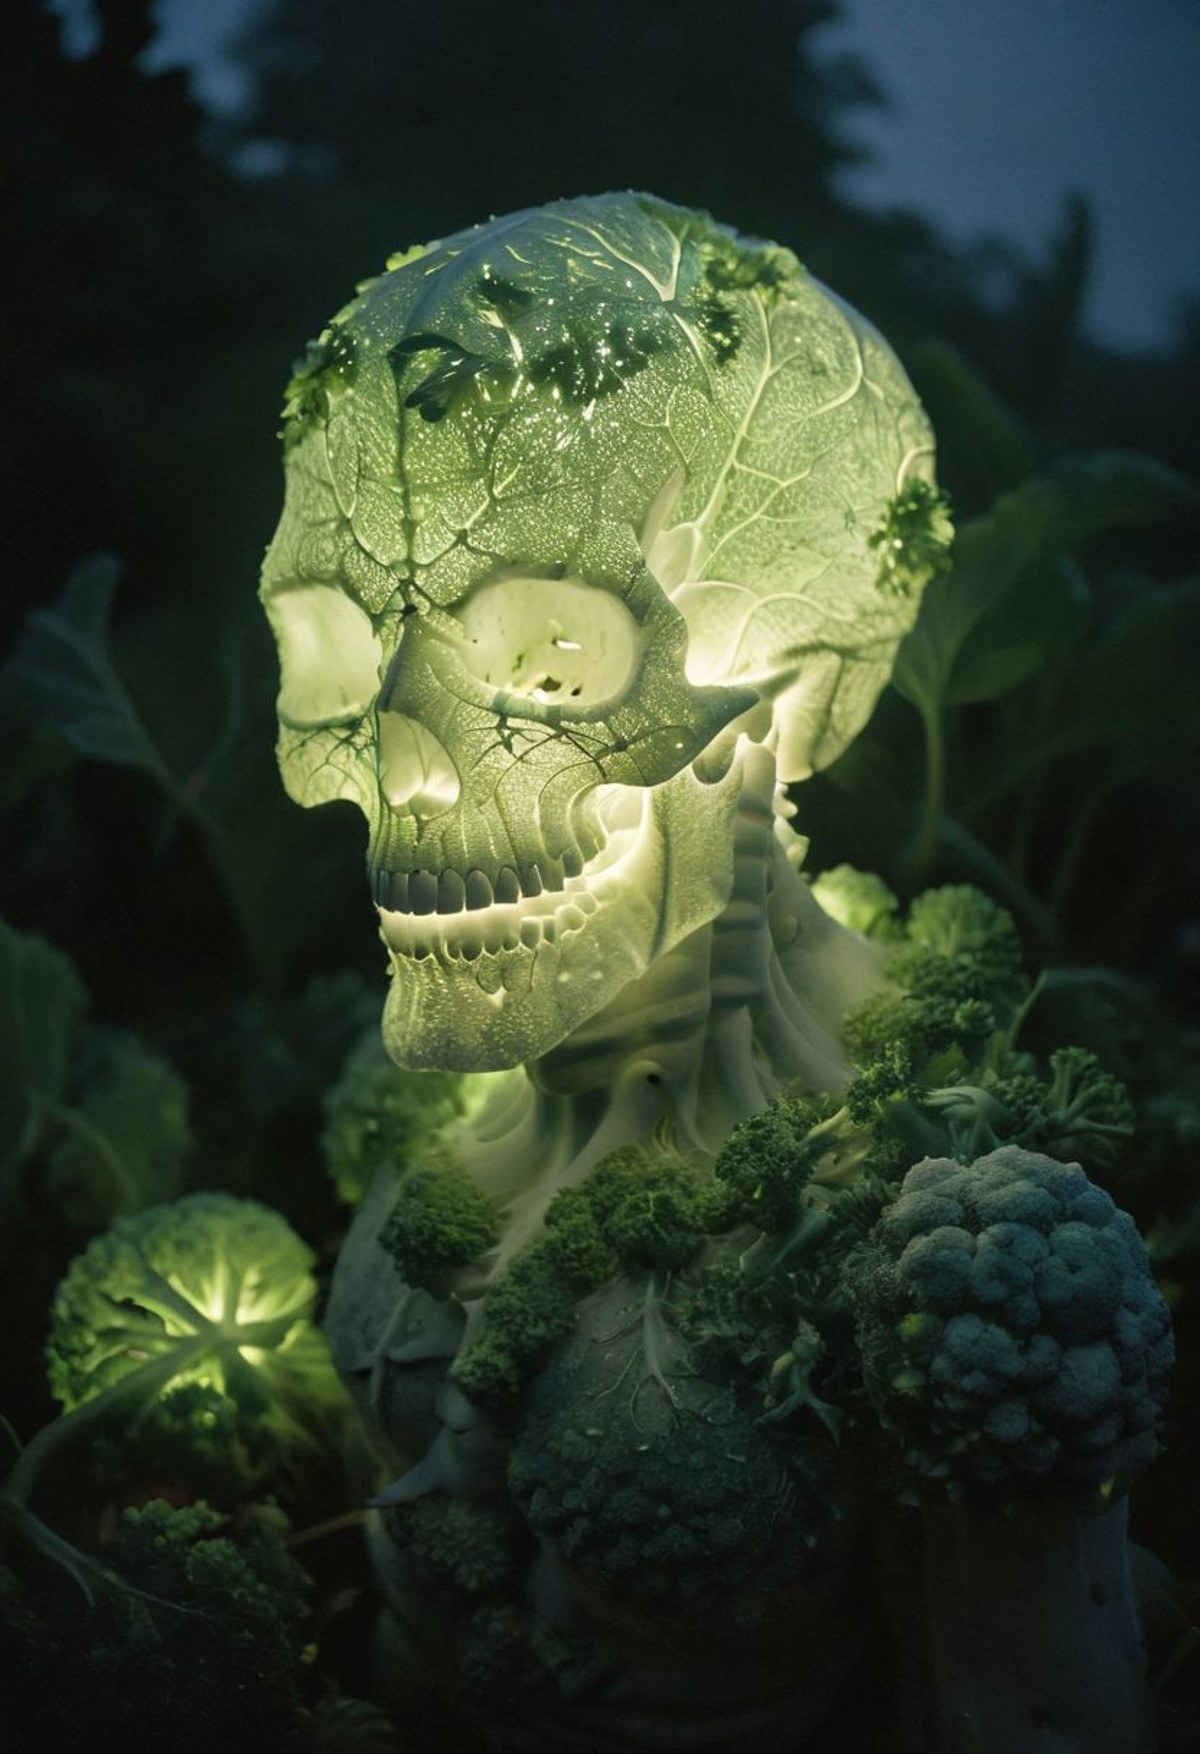 Backlight, Very detailed, a white Green sss thick resin crystalized horror skull monster-Broccoli of Doom, in wild Overgro...